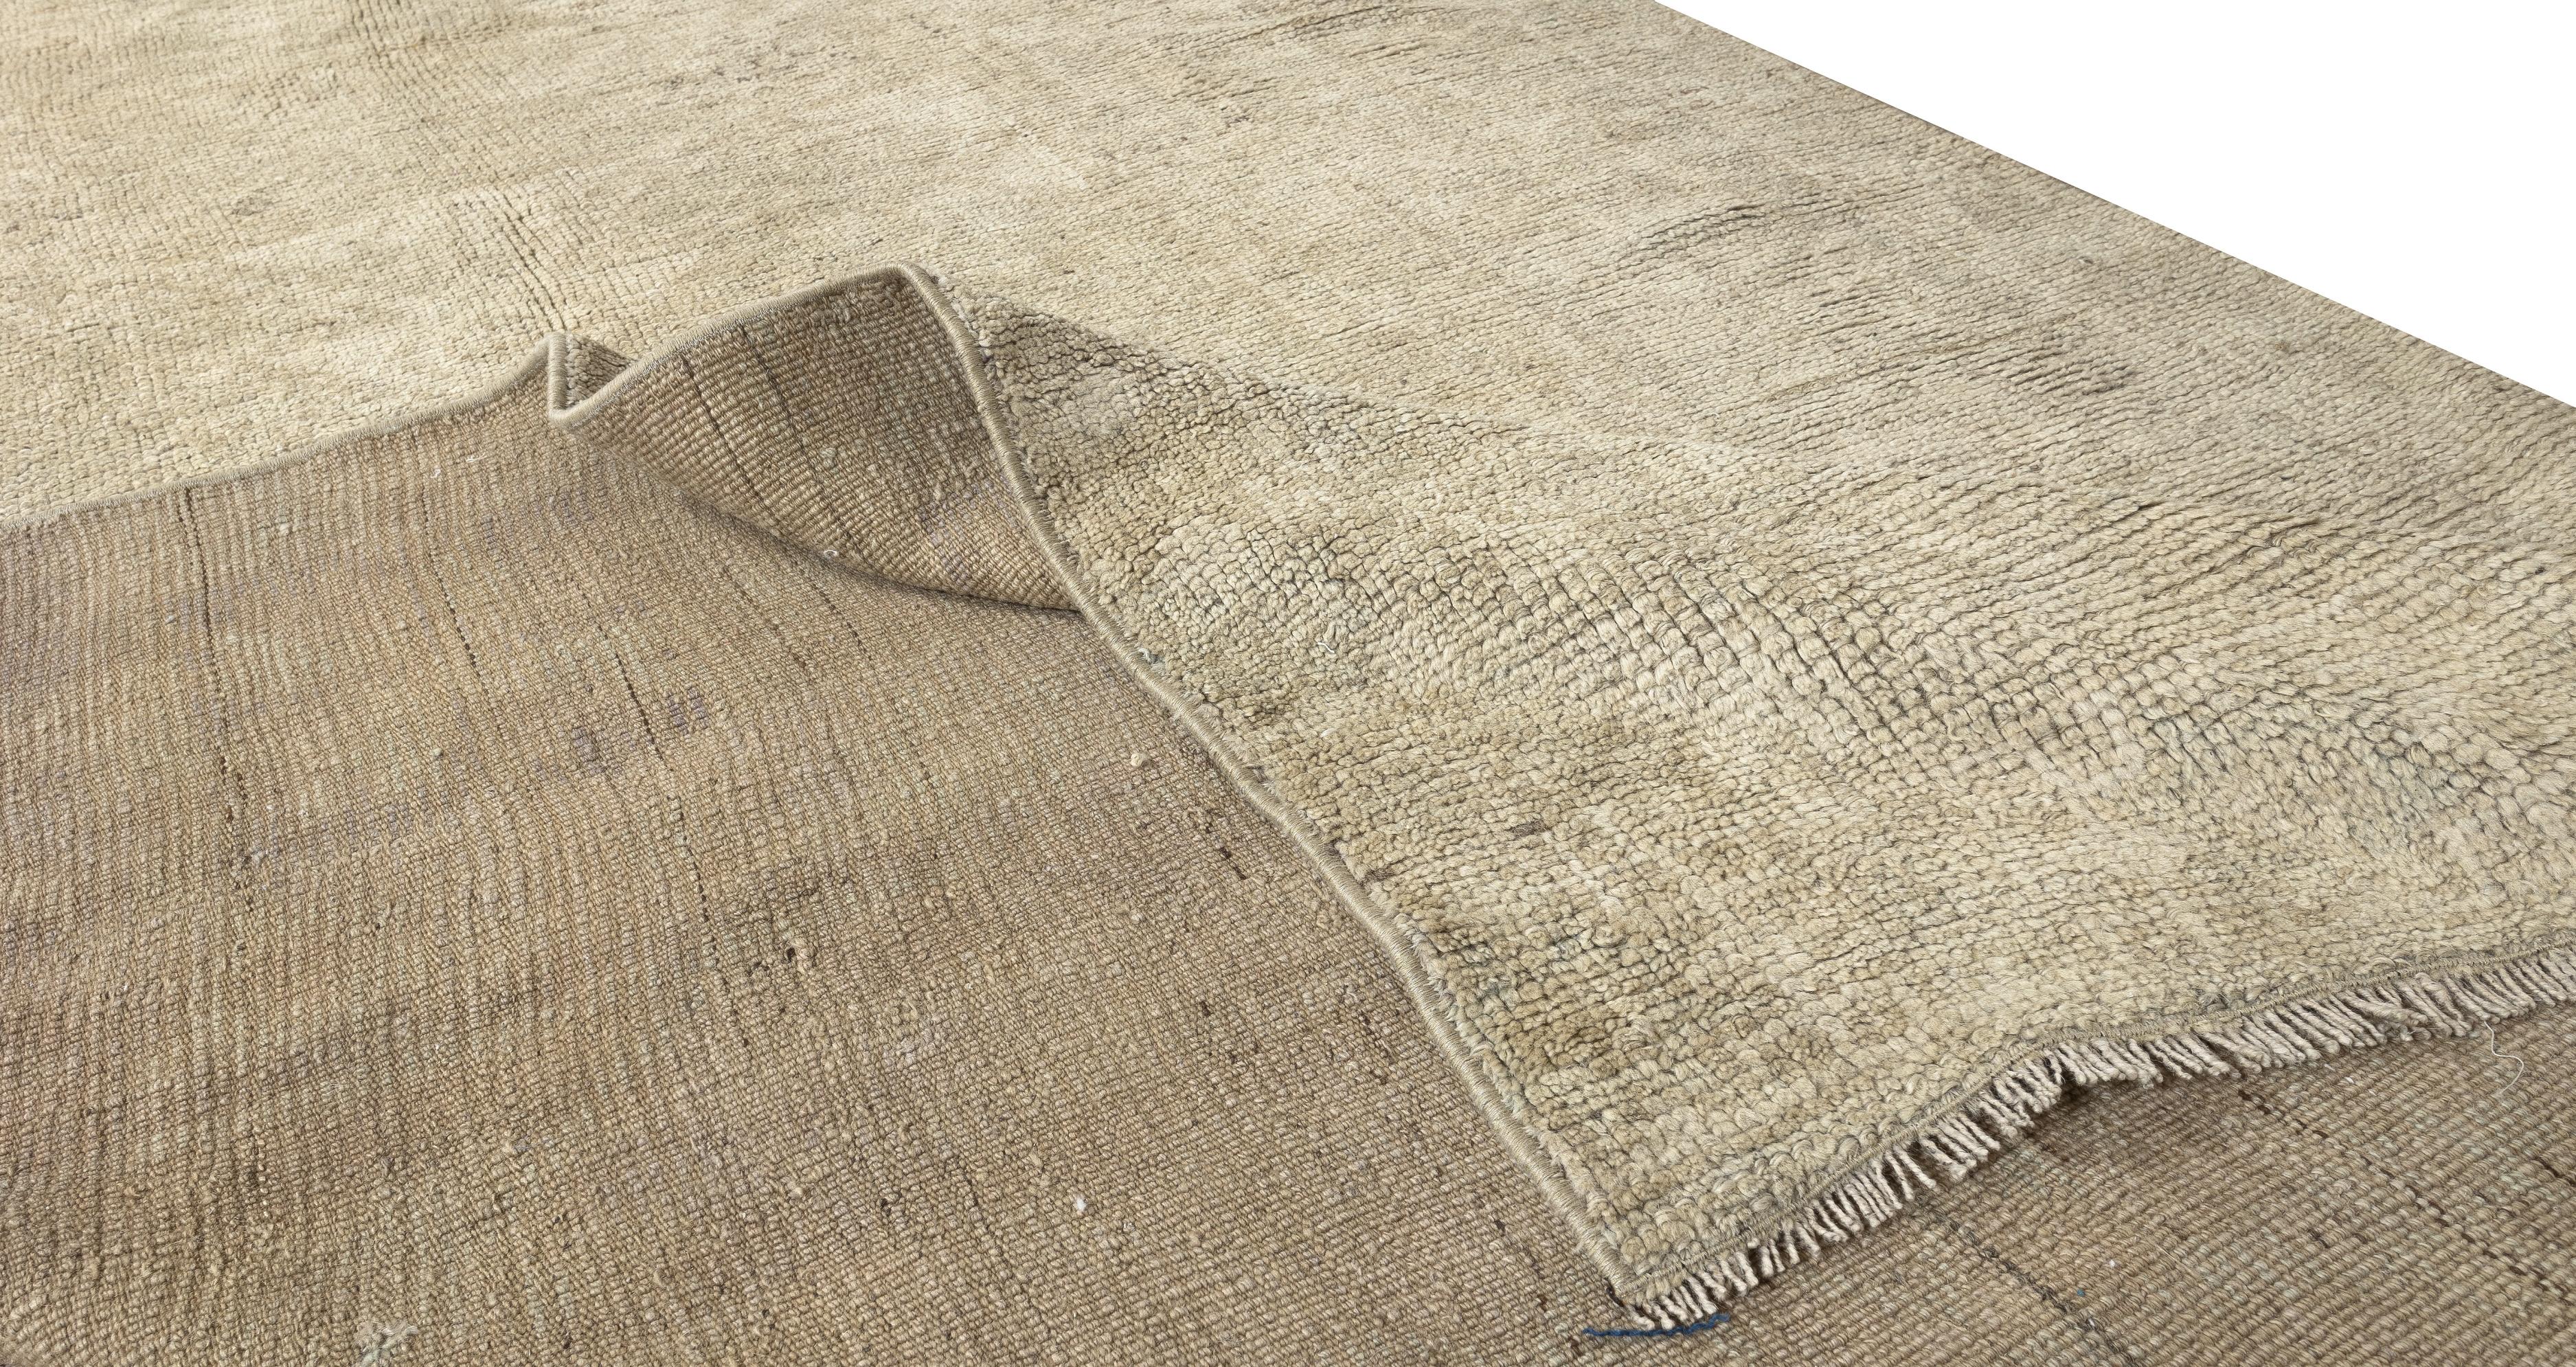 Turkish 4.7x11.5 Ft Mid-Century Handmade Oushak Runner Rug, Sun Faded Corridor Carpet For Sale